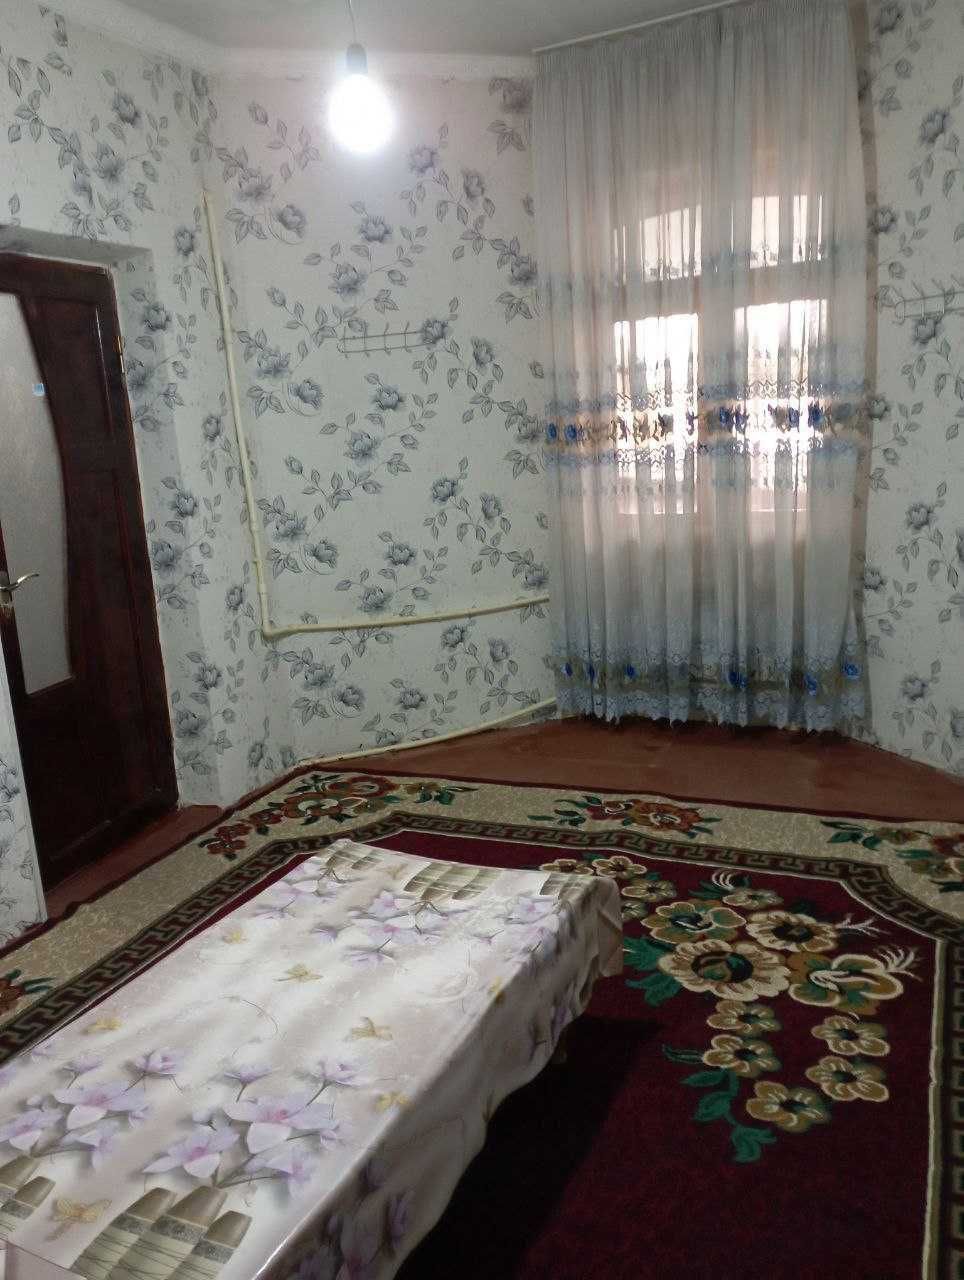 Аренда 2-комнатной квартиры на улица Мухтор Ашрафий